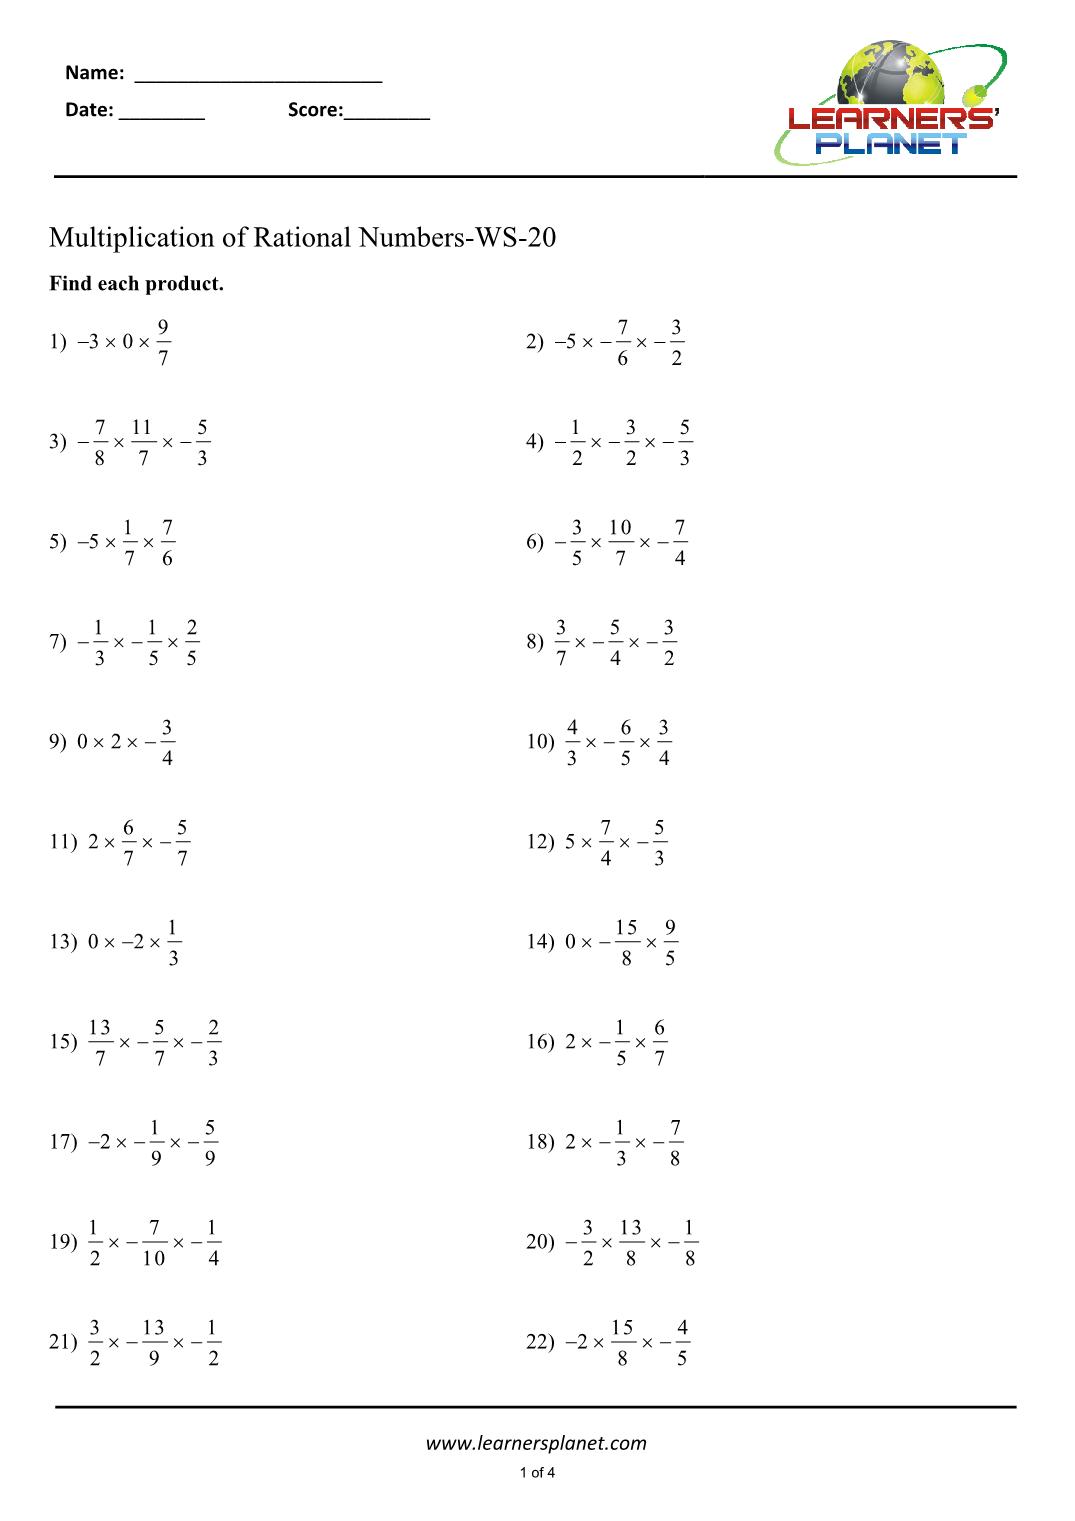 multiplying-rational-numbers-worksheet-educational-worksheet